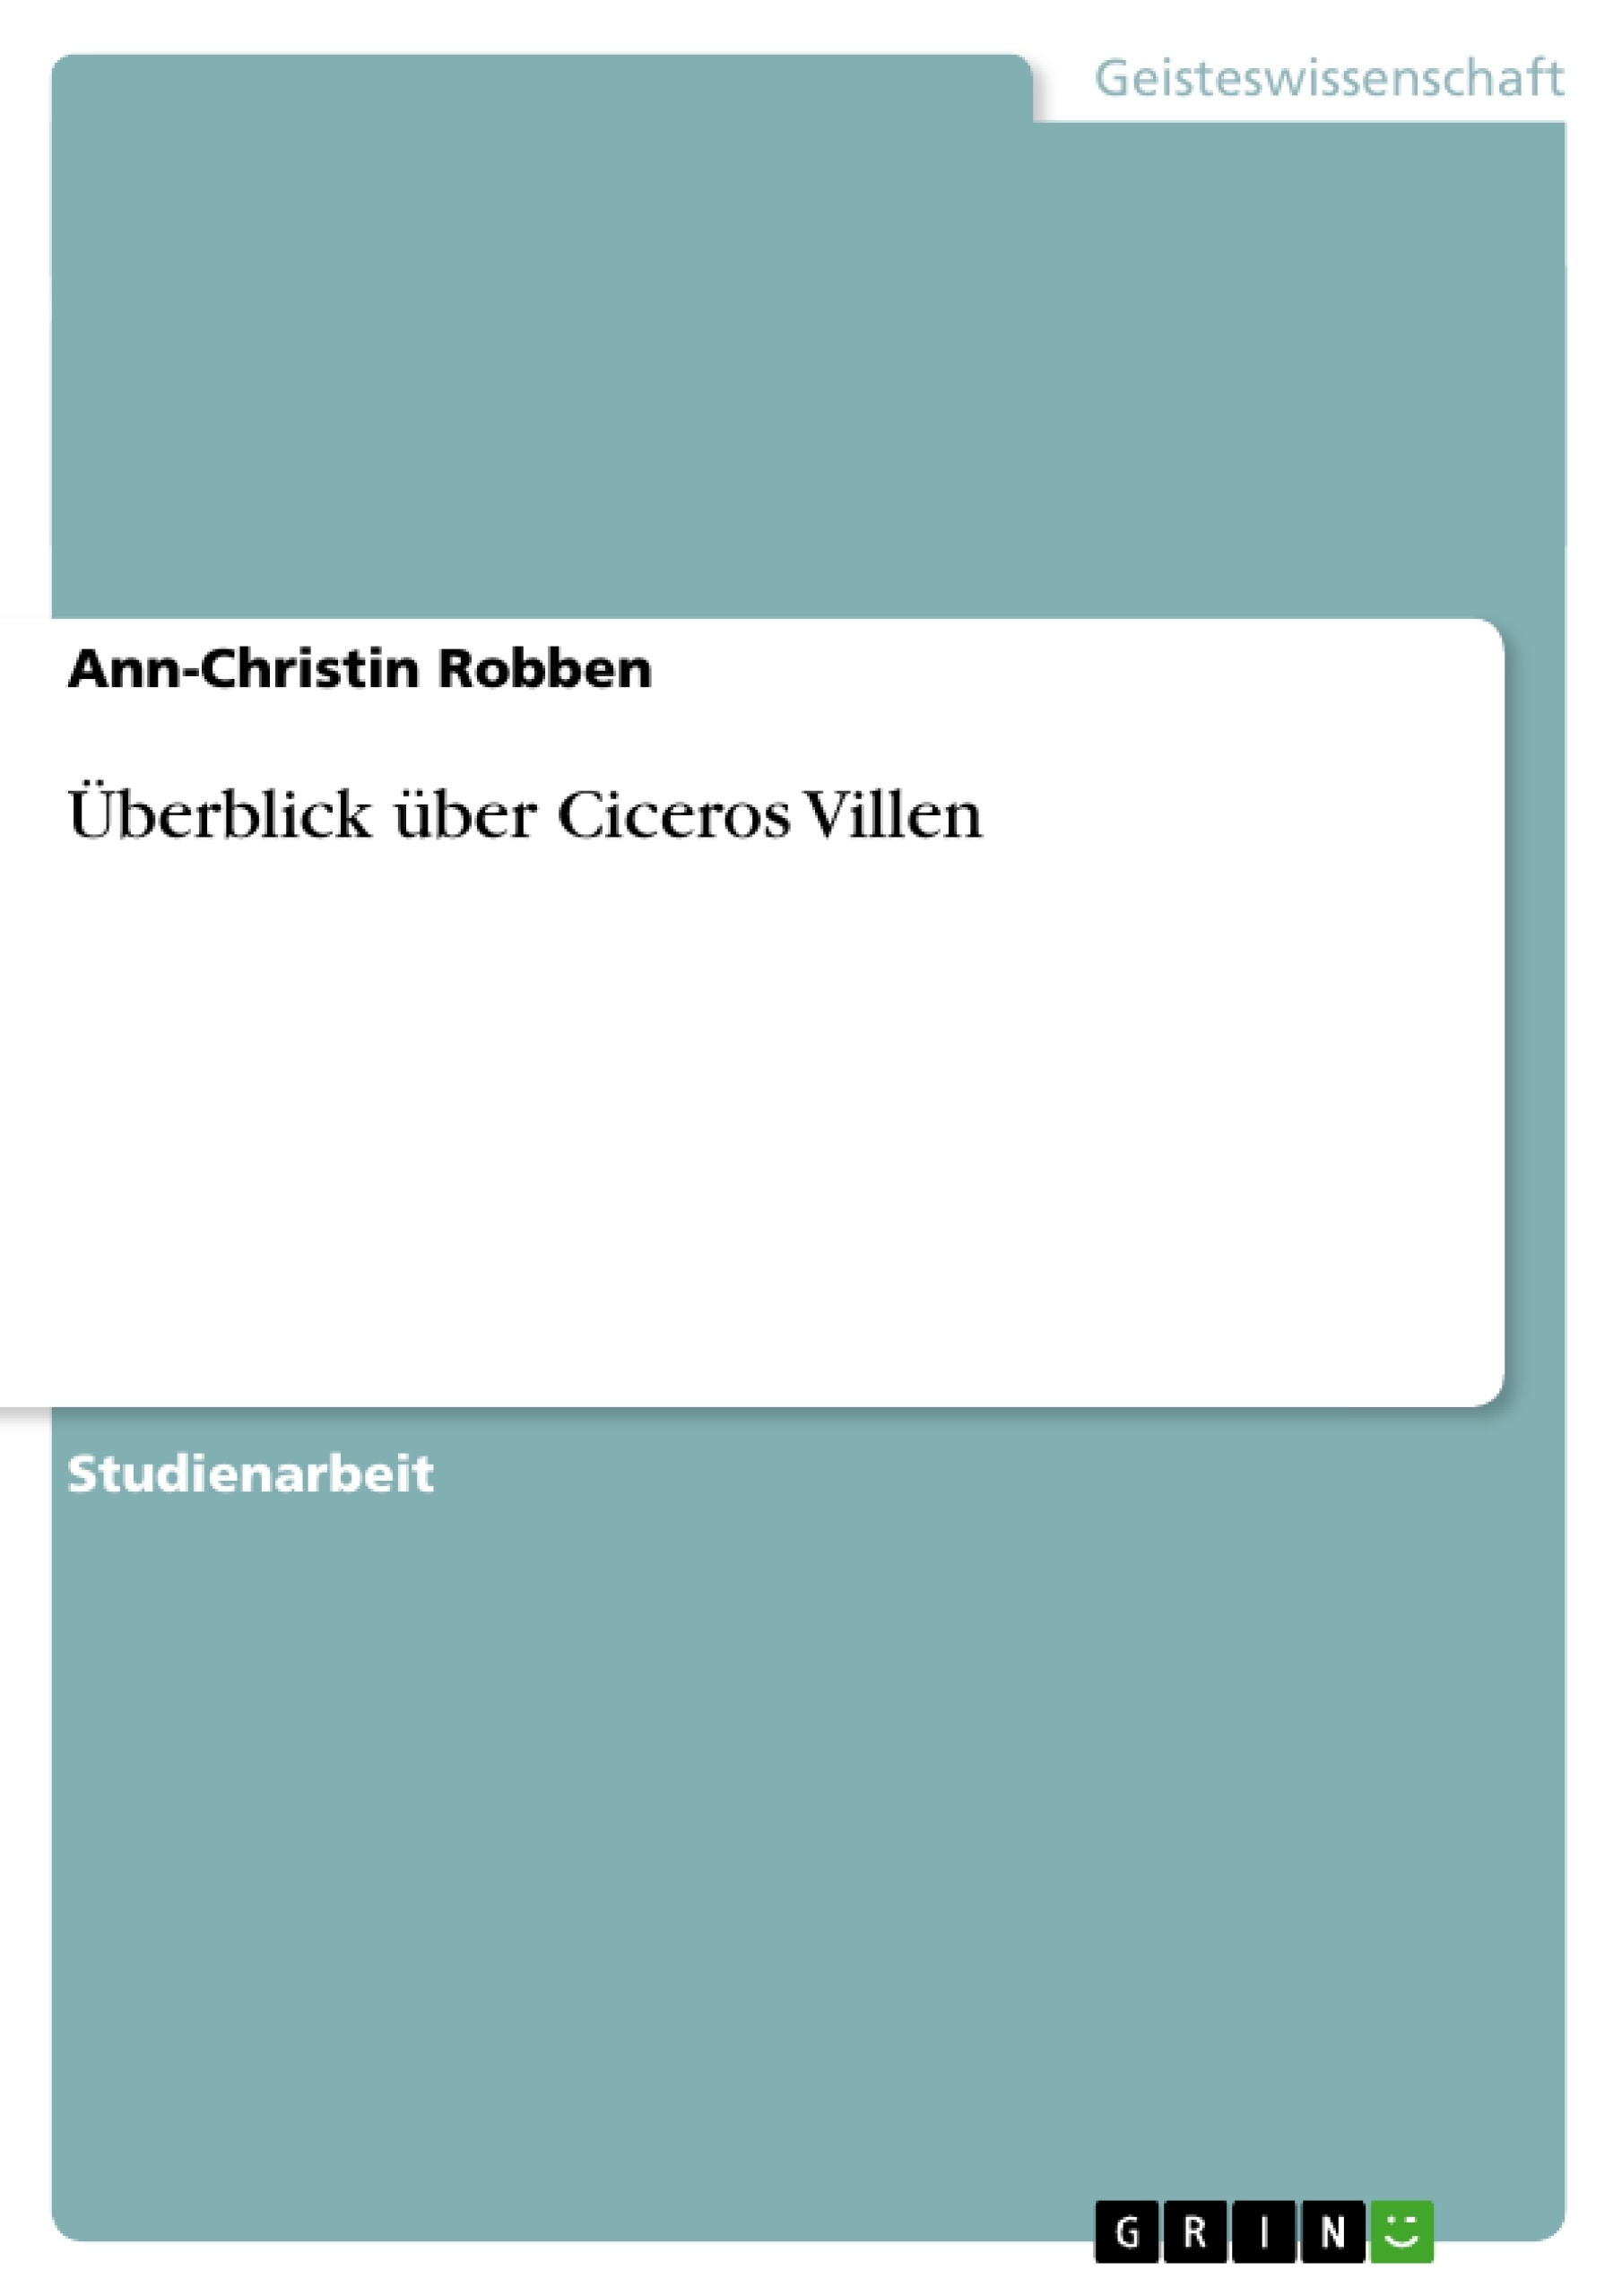 Title: Überblick über Ciceros Villen